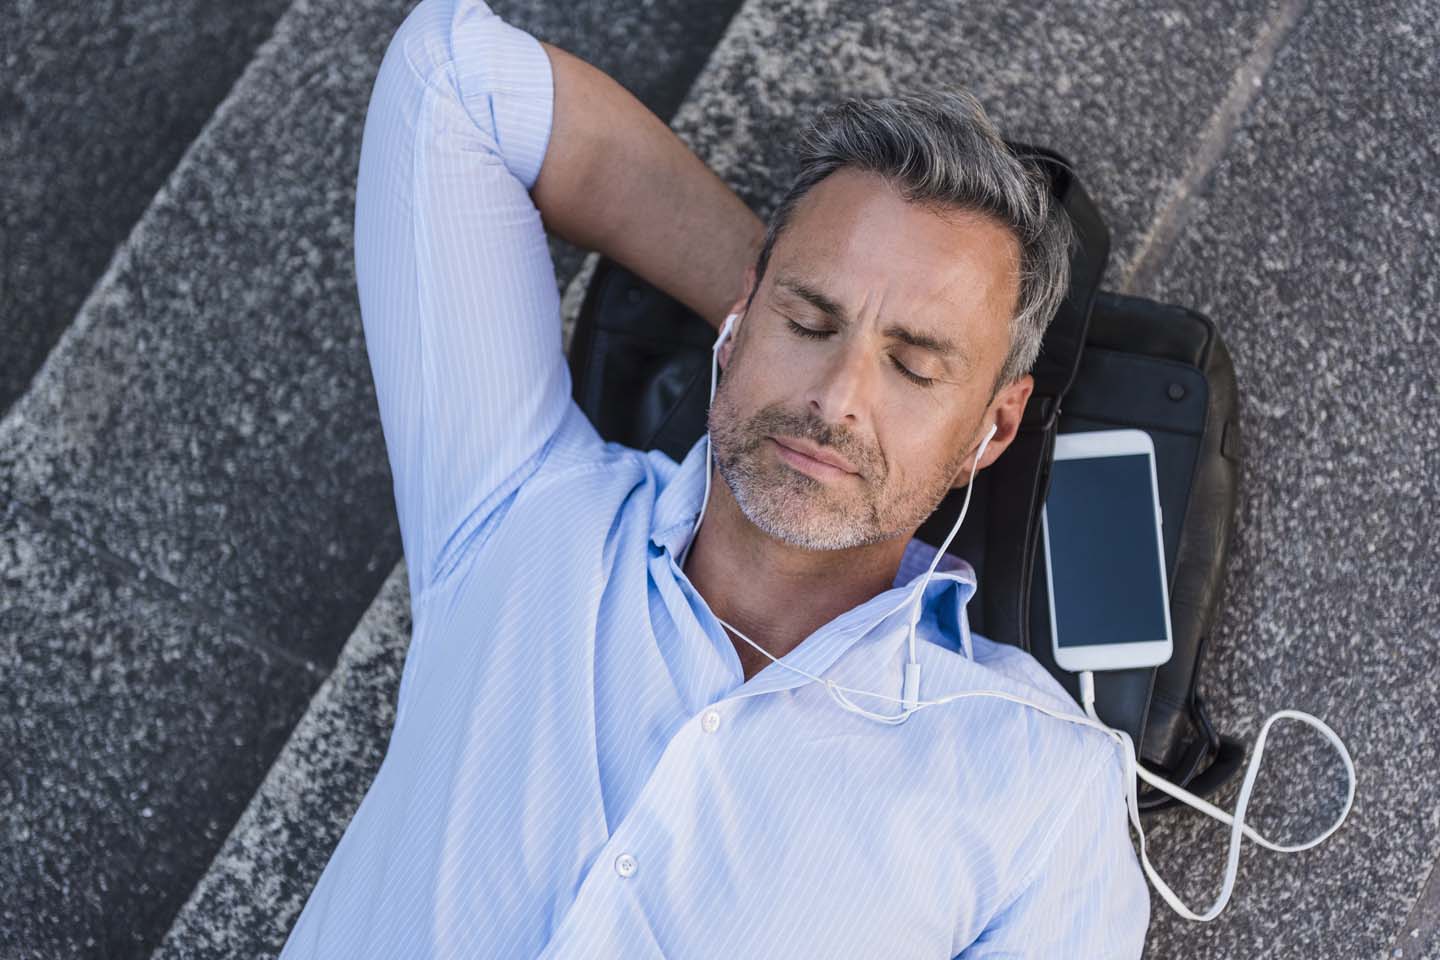 Mann mit geschlossenen Augen liegt auf einer Treppe, mit Handy und Kopfhörern.